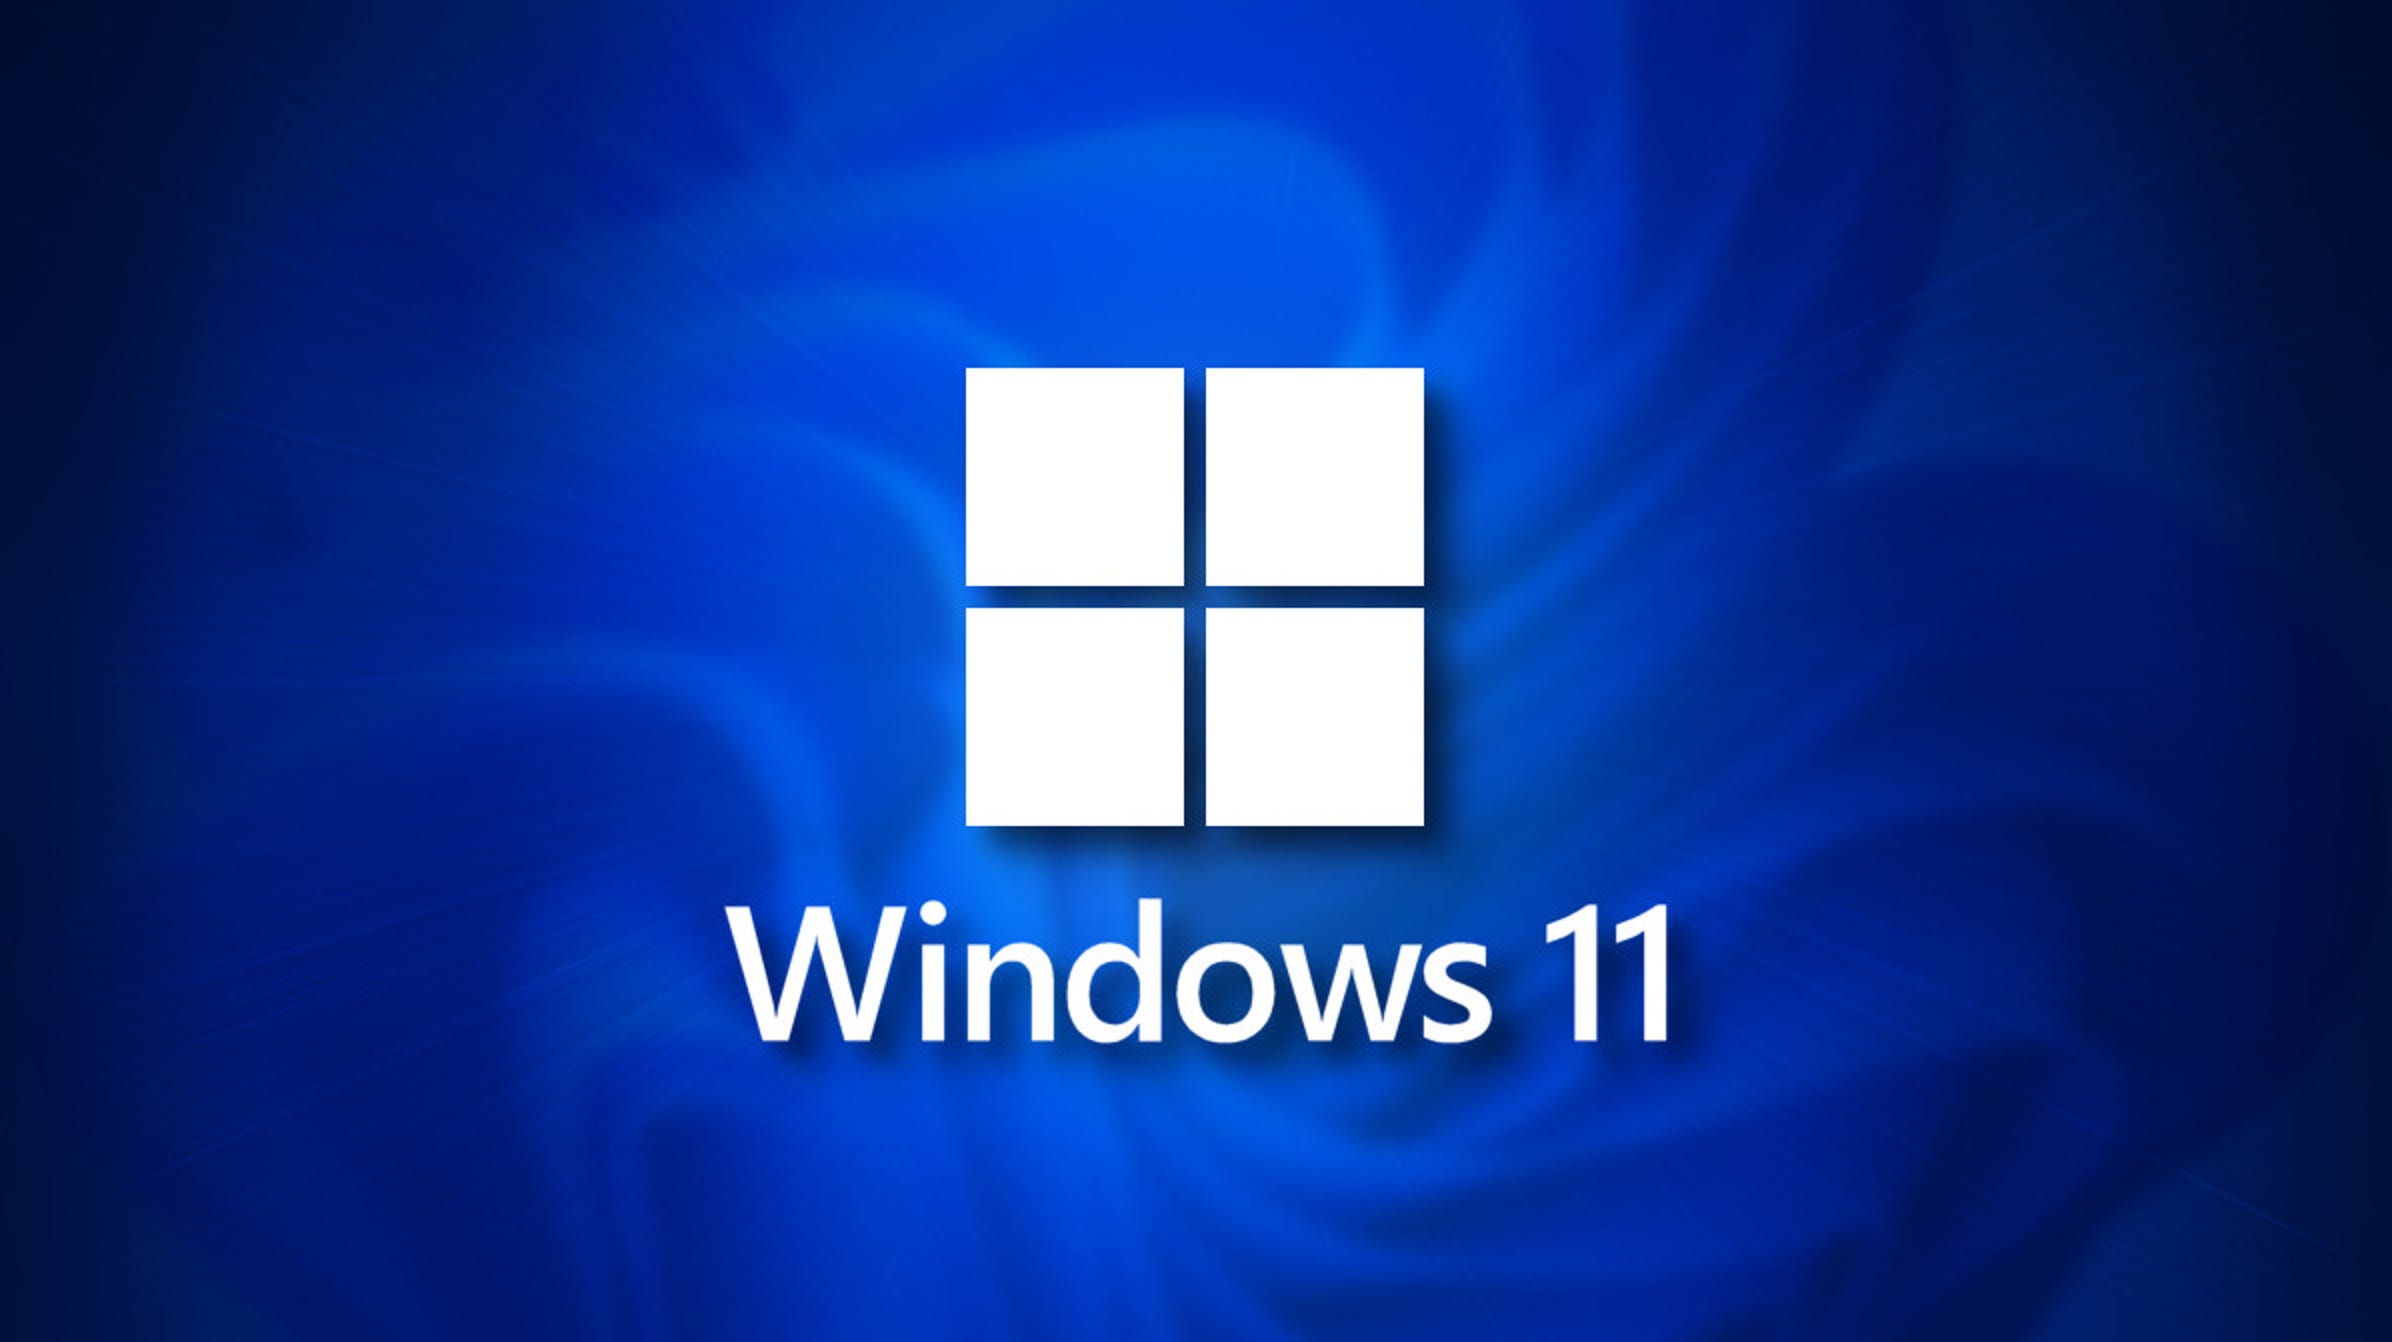 Immer mehr PCs Windows 11, Ist dein Nächster? 3